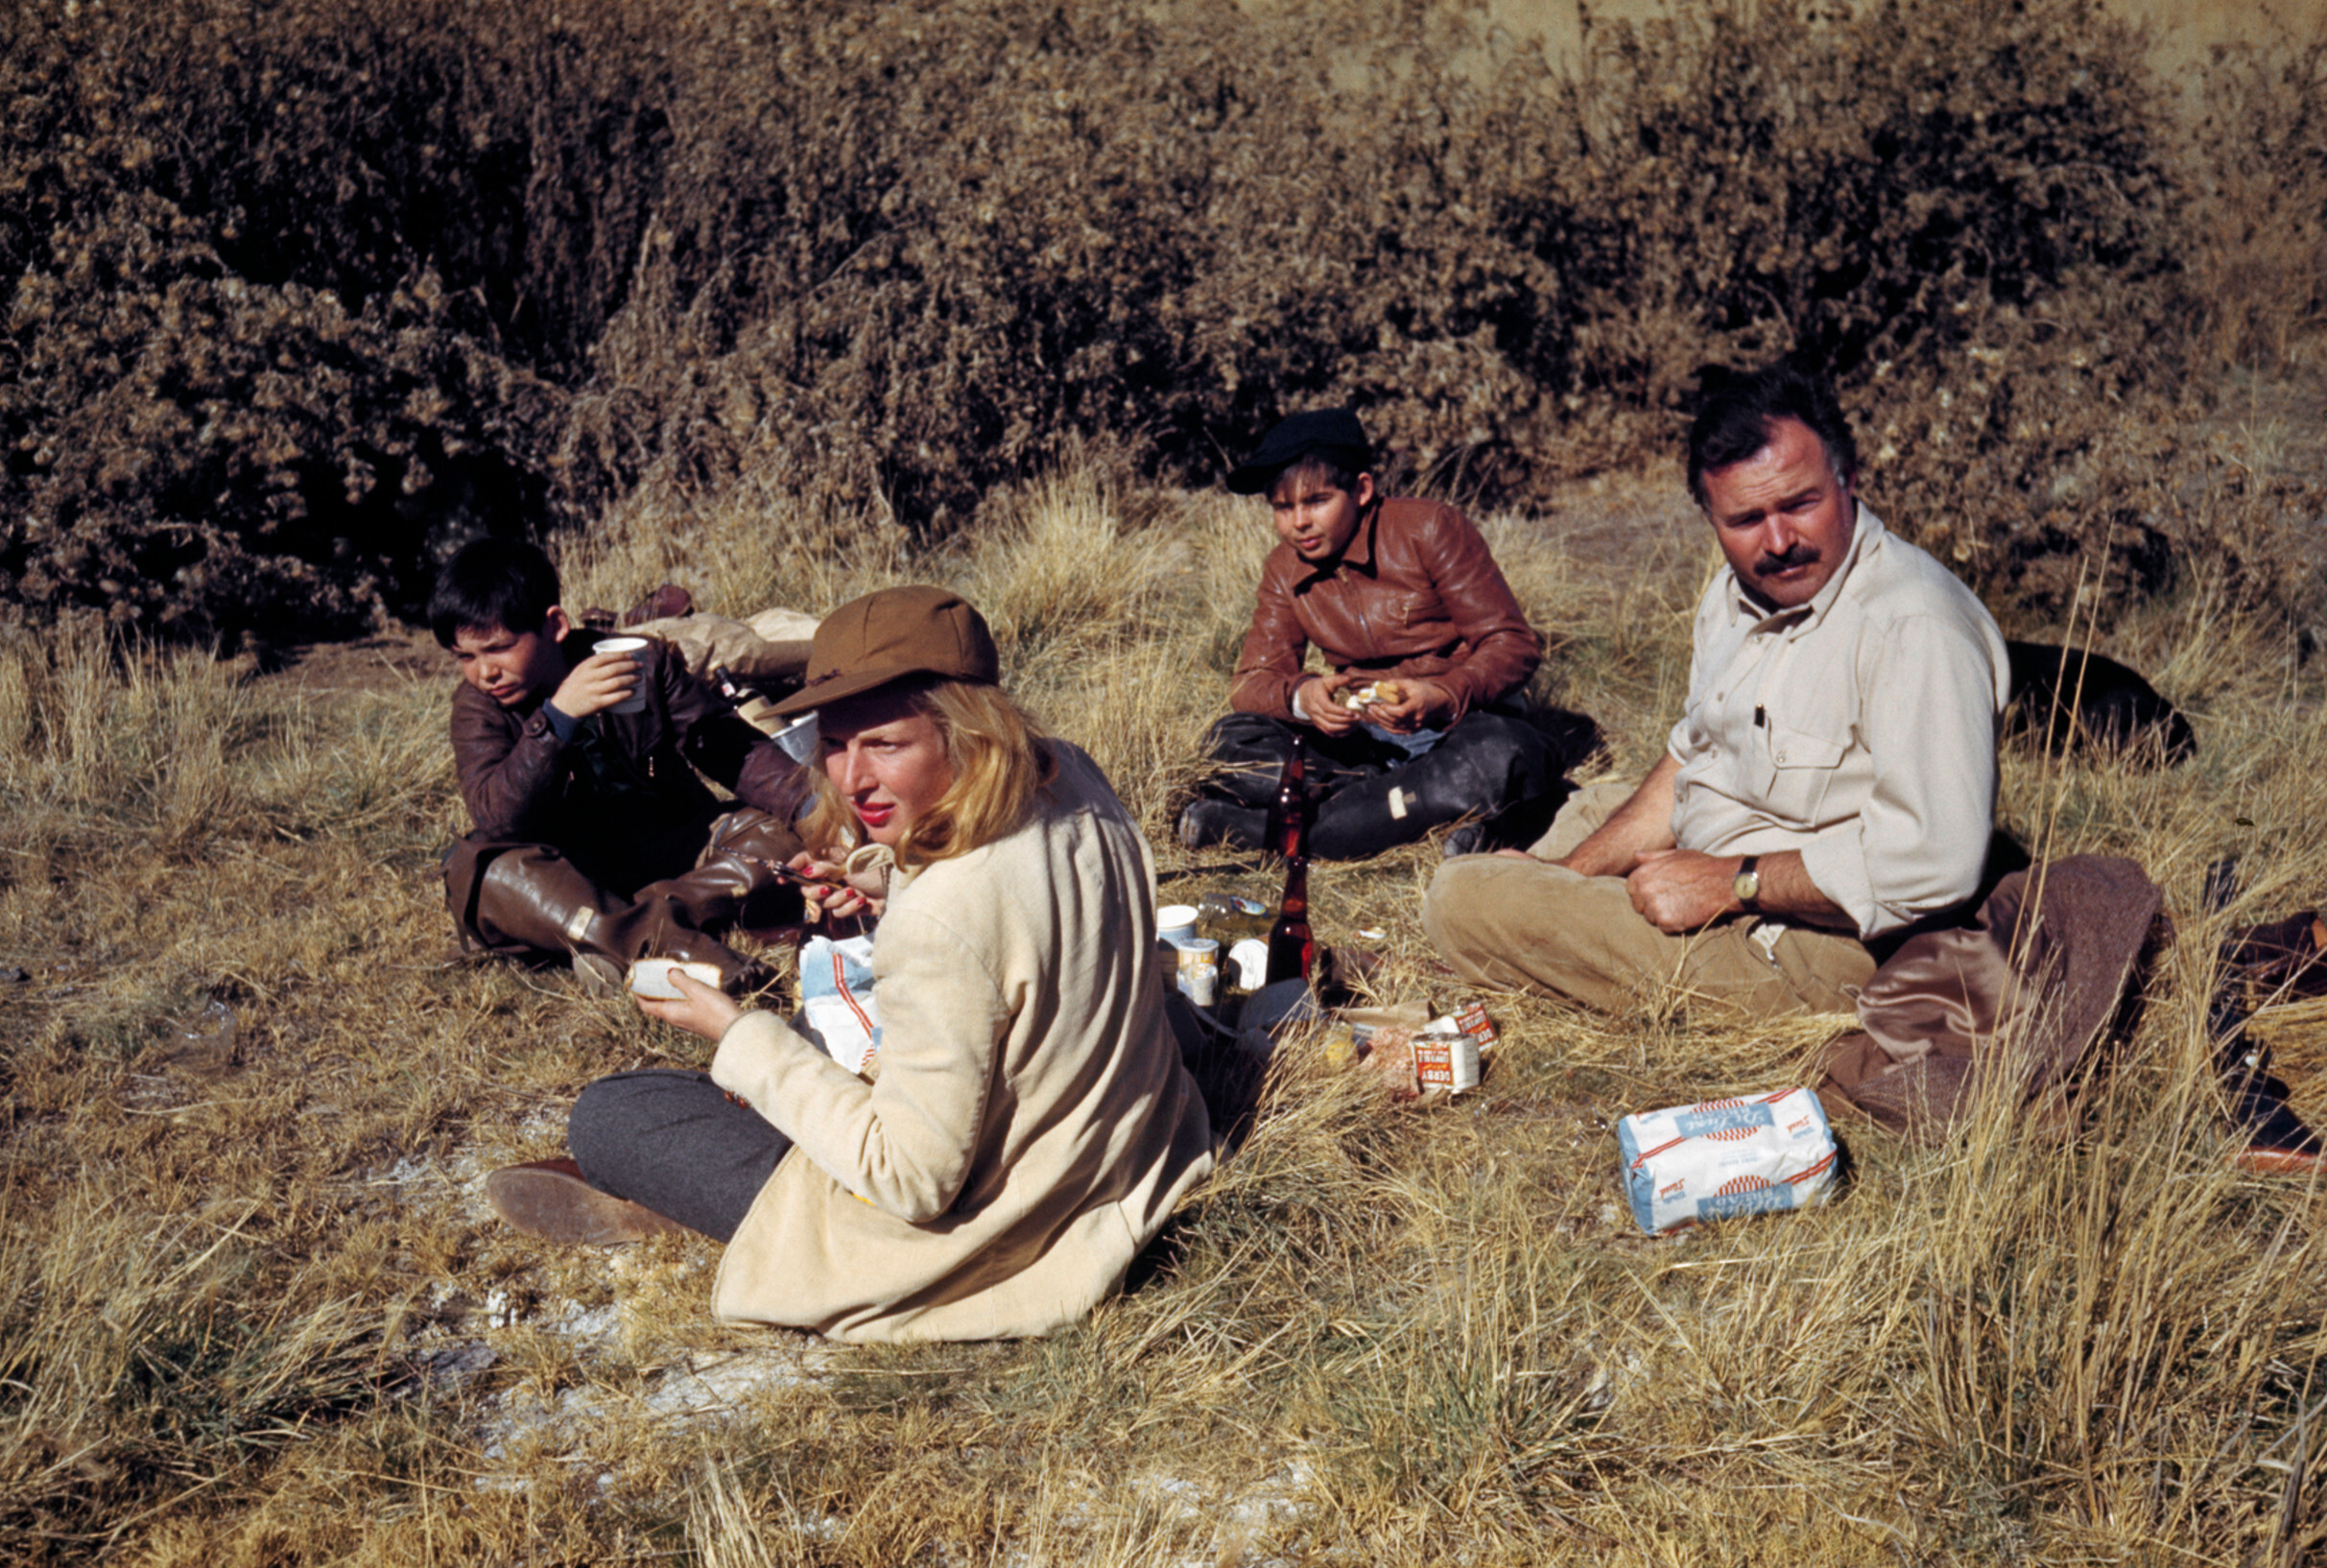 Эрнест Хемингуэй, его сыновья, Грегори и Патрик, и Марта Геллхорн, Сан-Вэлли, Айдахо, Октябрь 1941 год.  Фотограф Роберт Капа